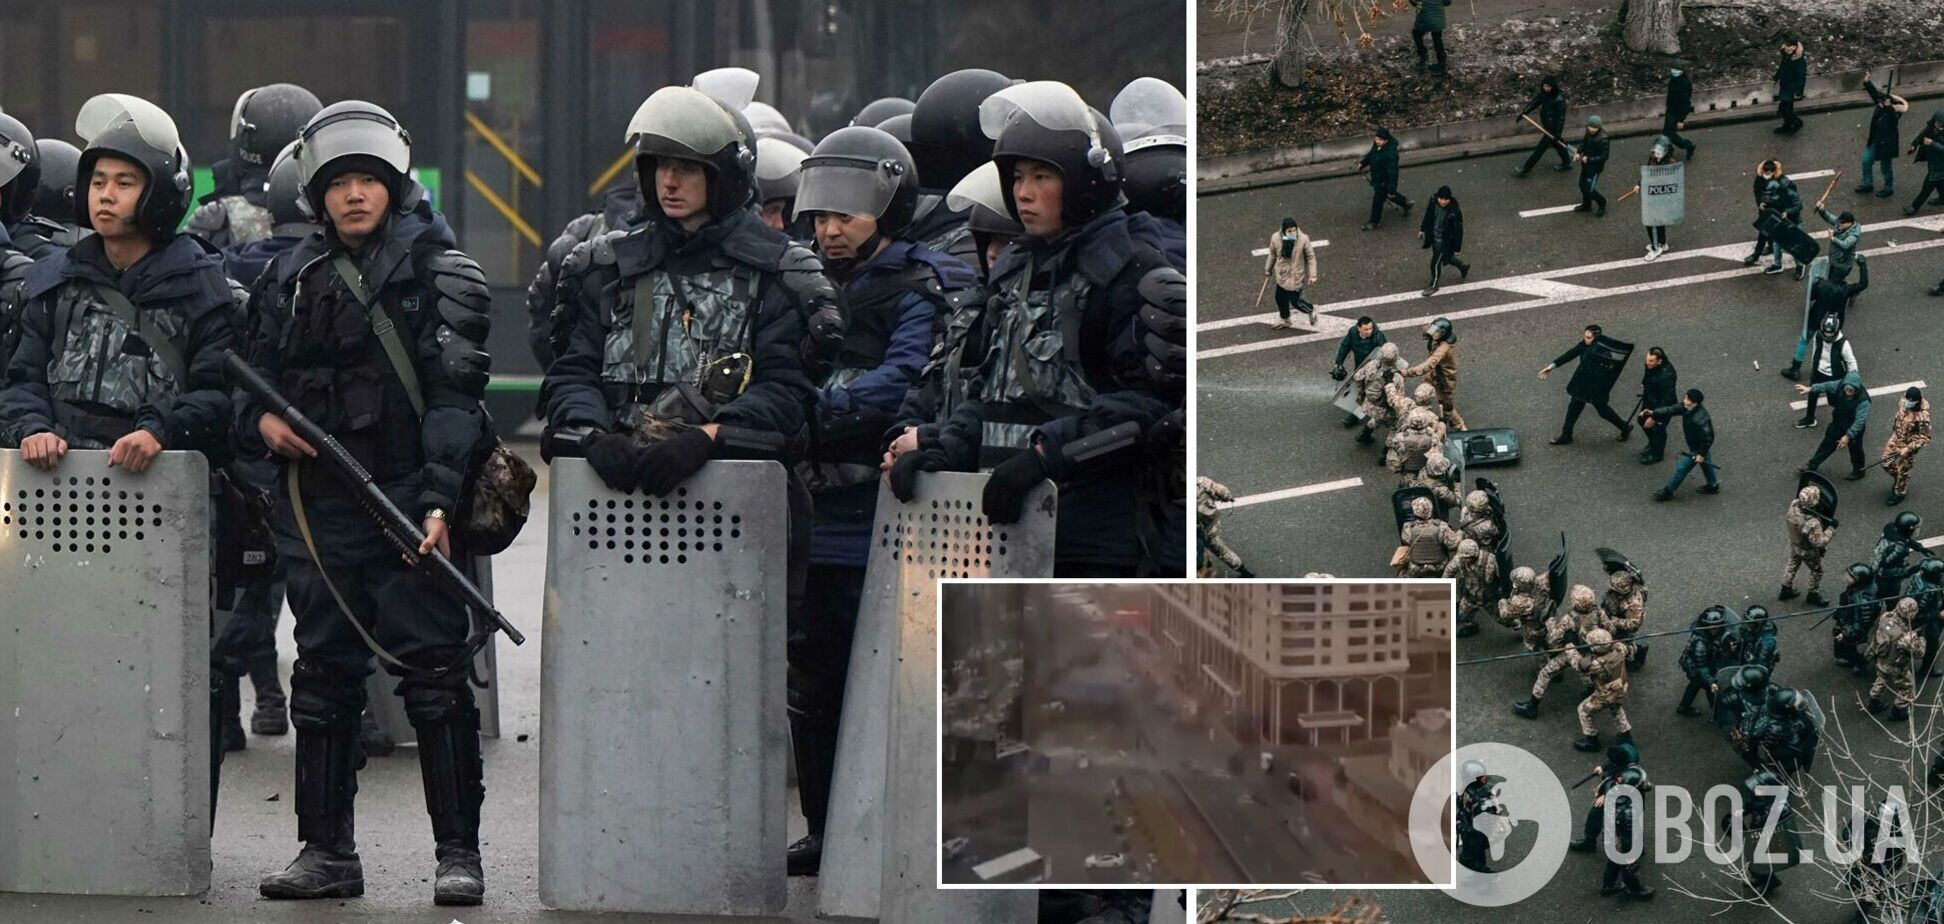 В Алматы протестующие оказали ожесточенное сопротивление силовикам, произошла стрельба. Видео